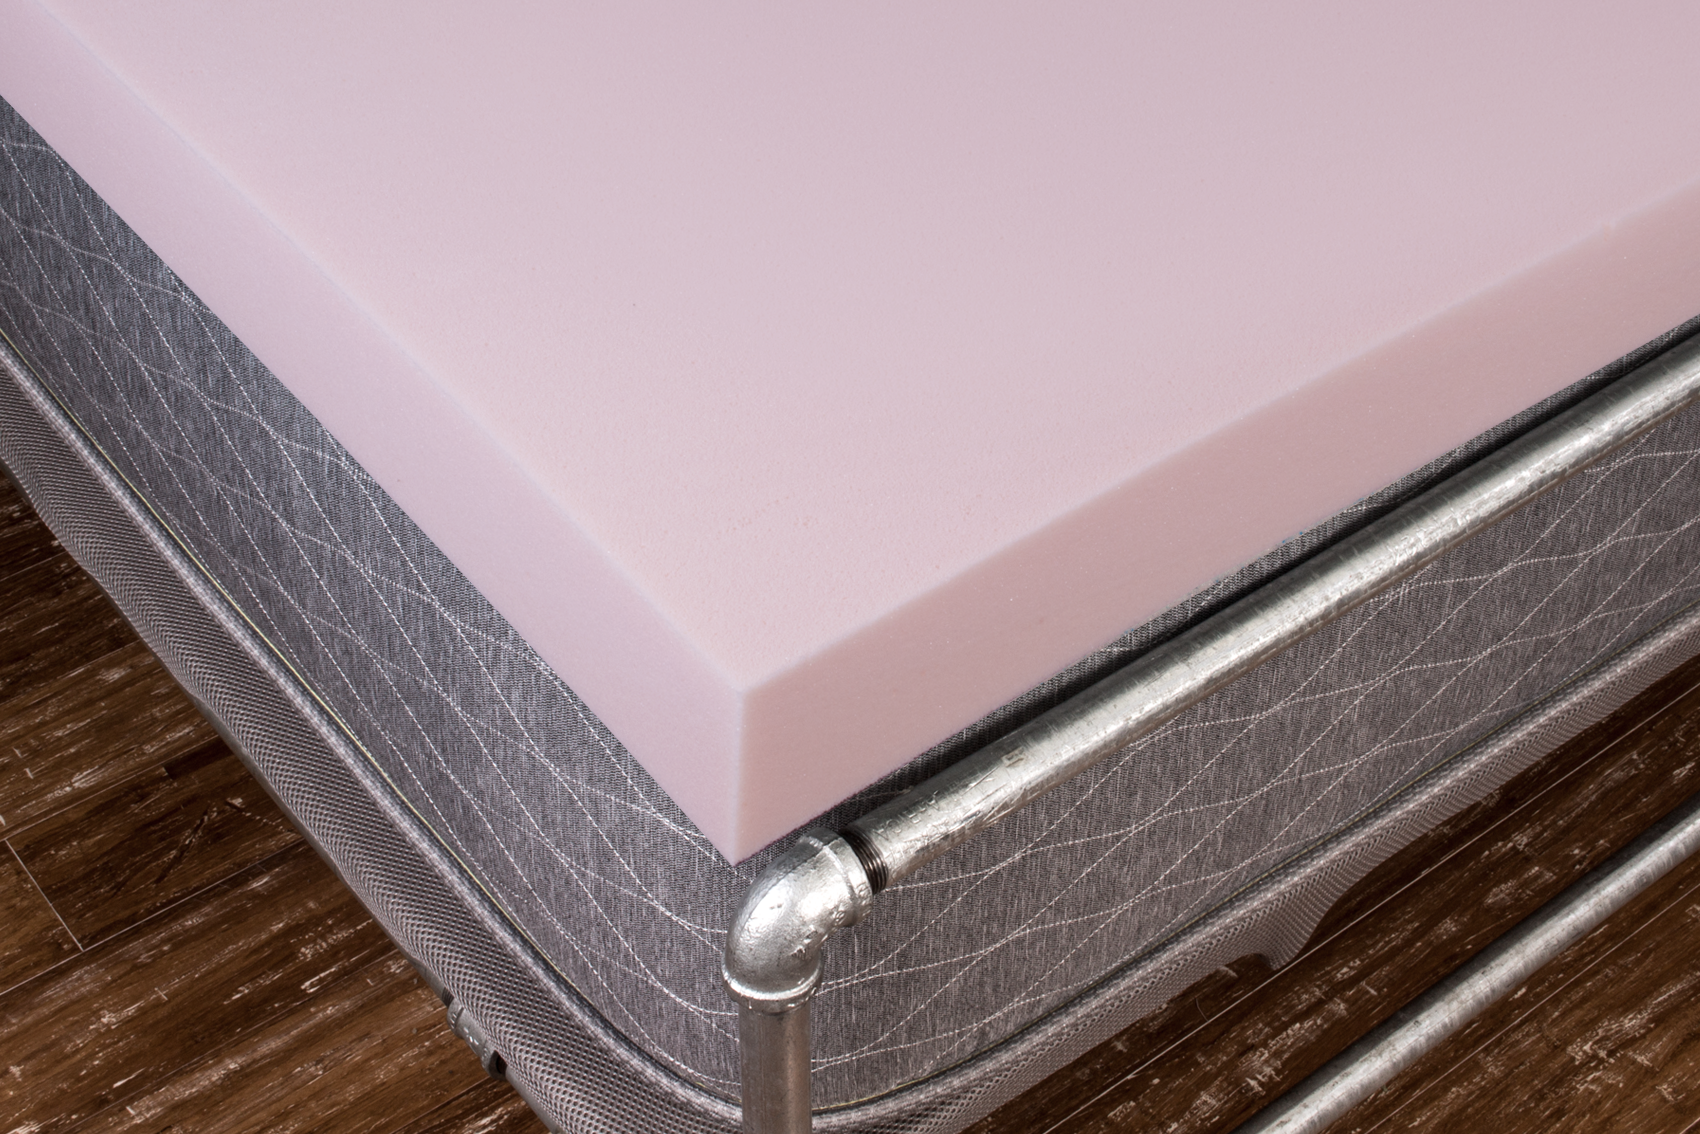 5 lbs density memory foam mattress topper